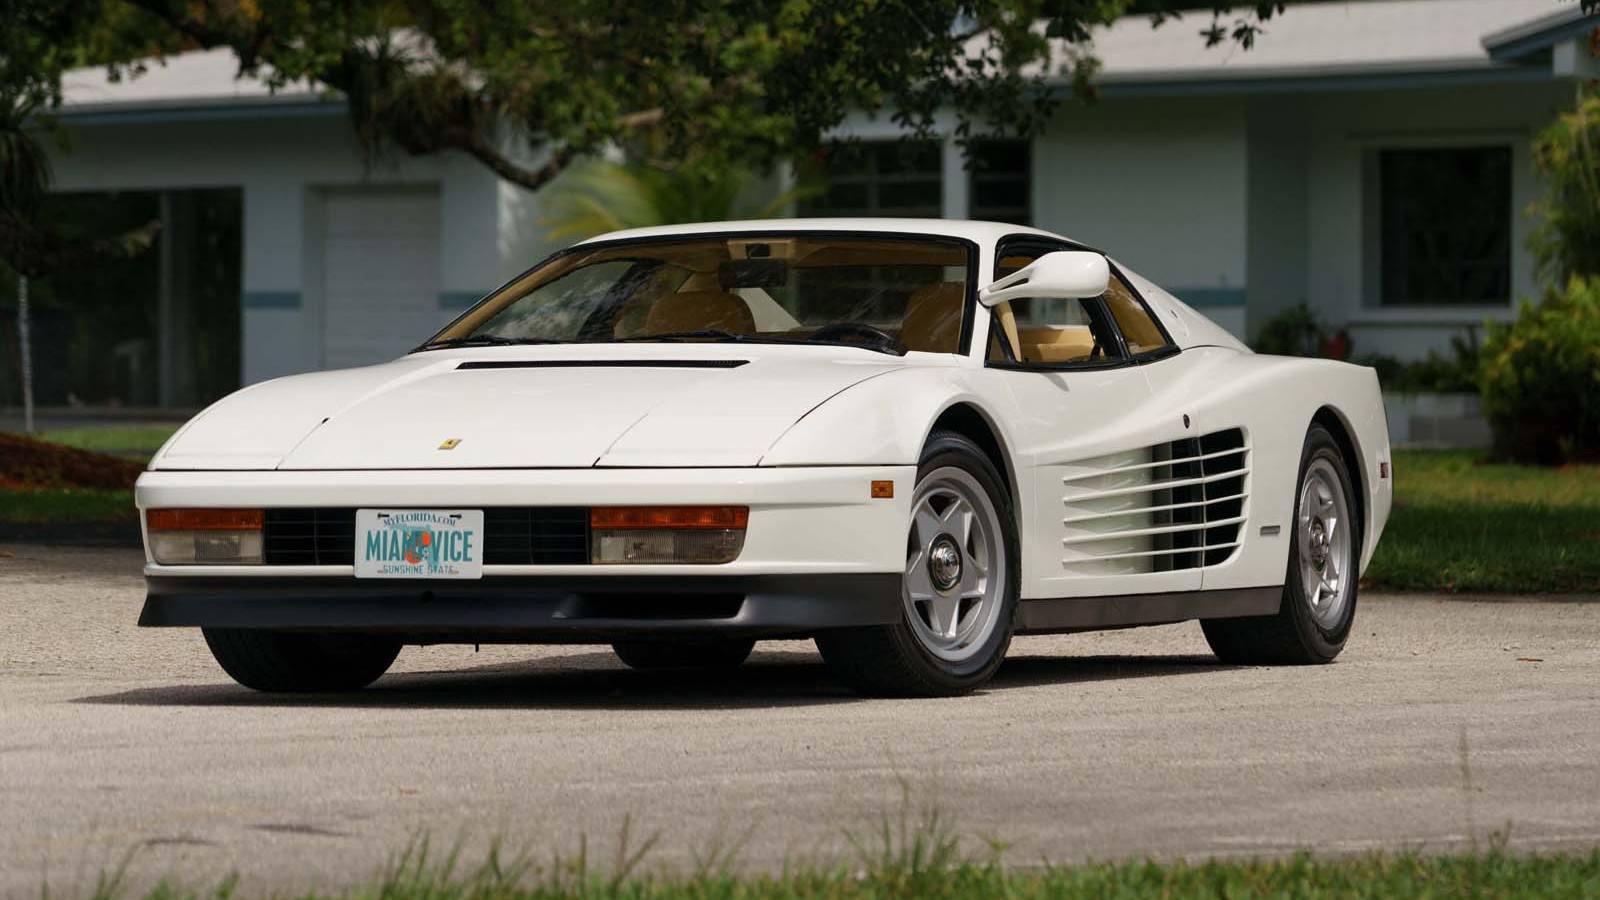 1986 Ferrari Testarossa from ‘Miami Vice’